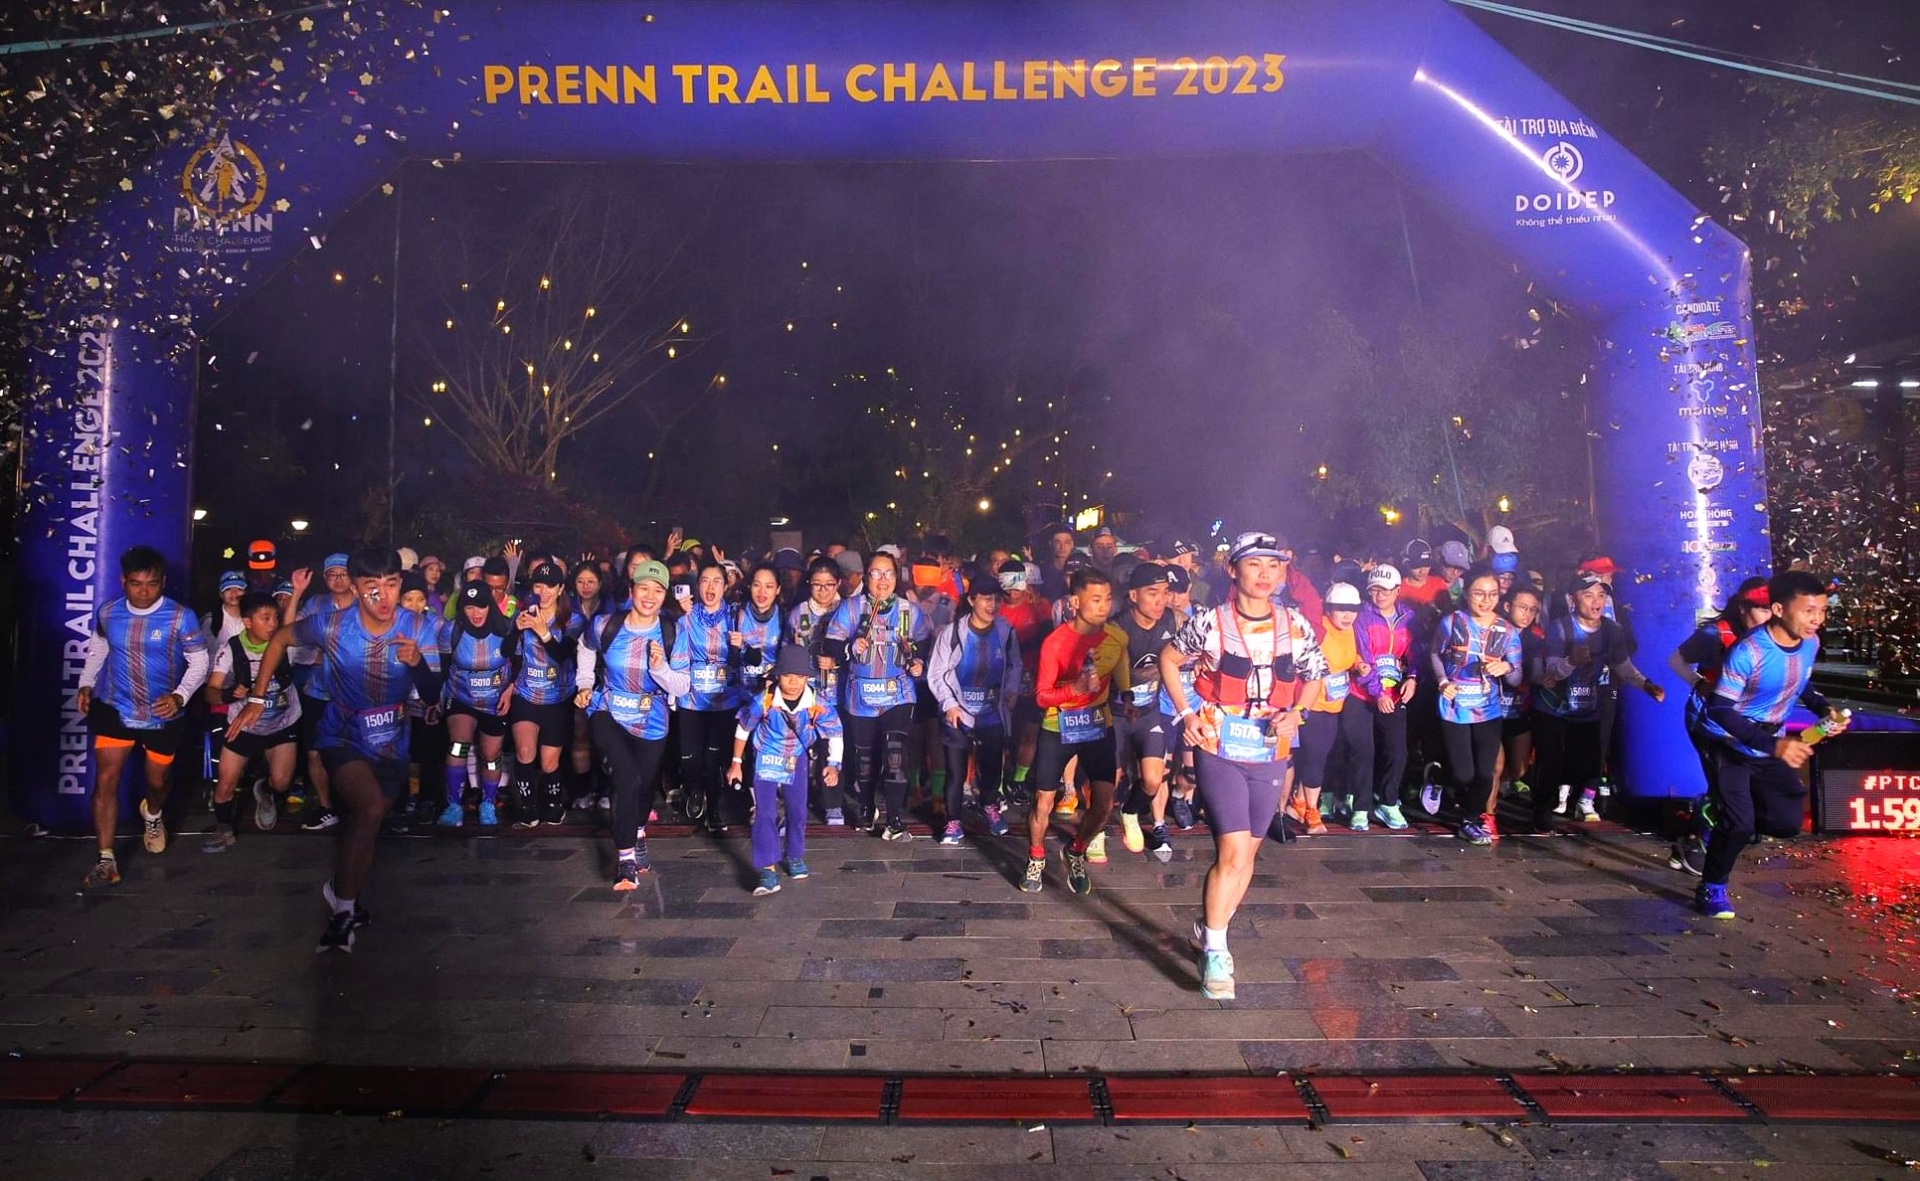 Trao giải cho các vận động viên về đầu tại Giải chạy địa hình Prenn Trail Chalenge 2023